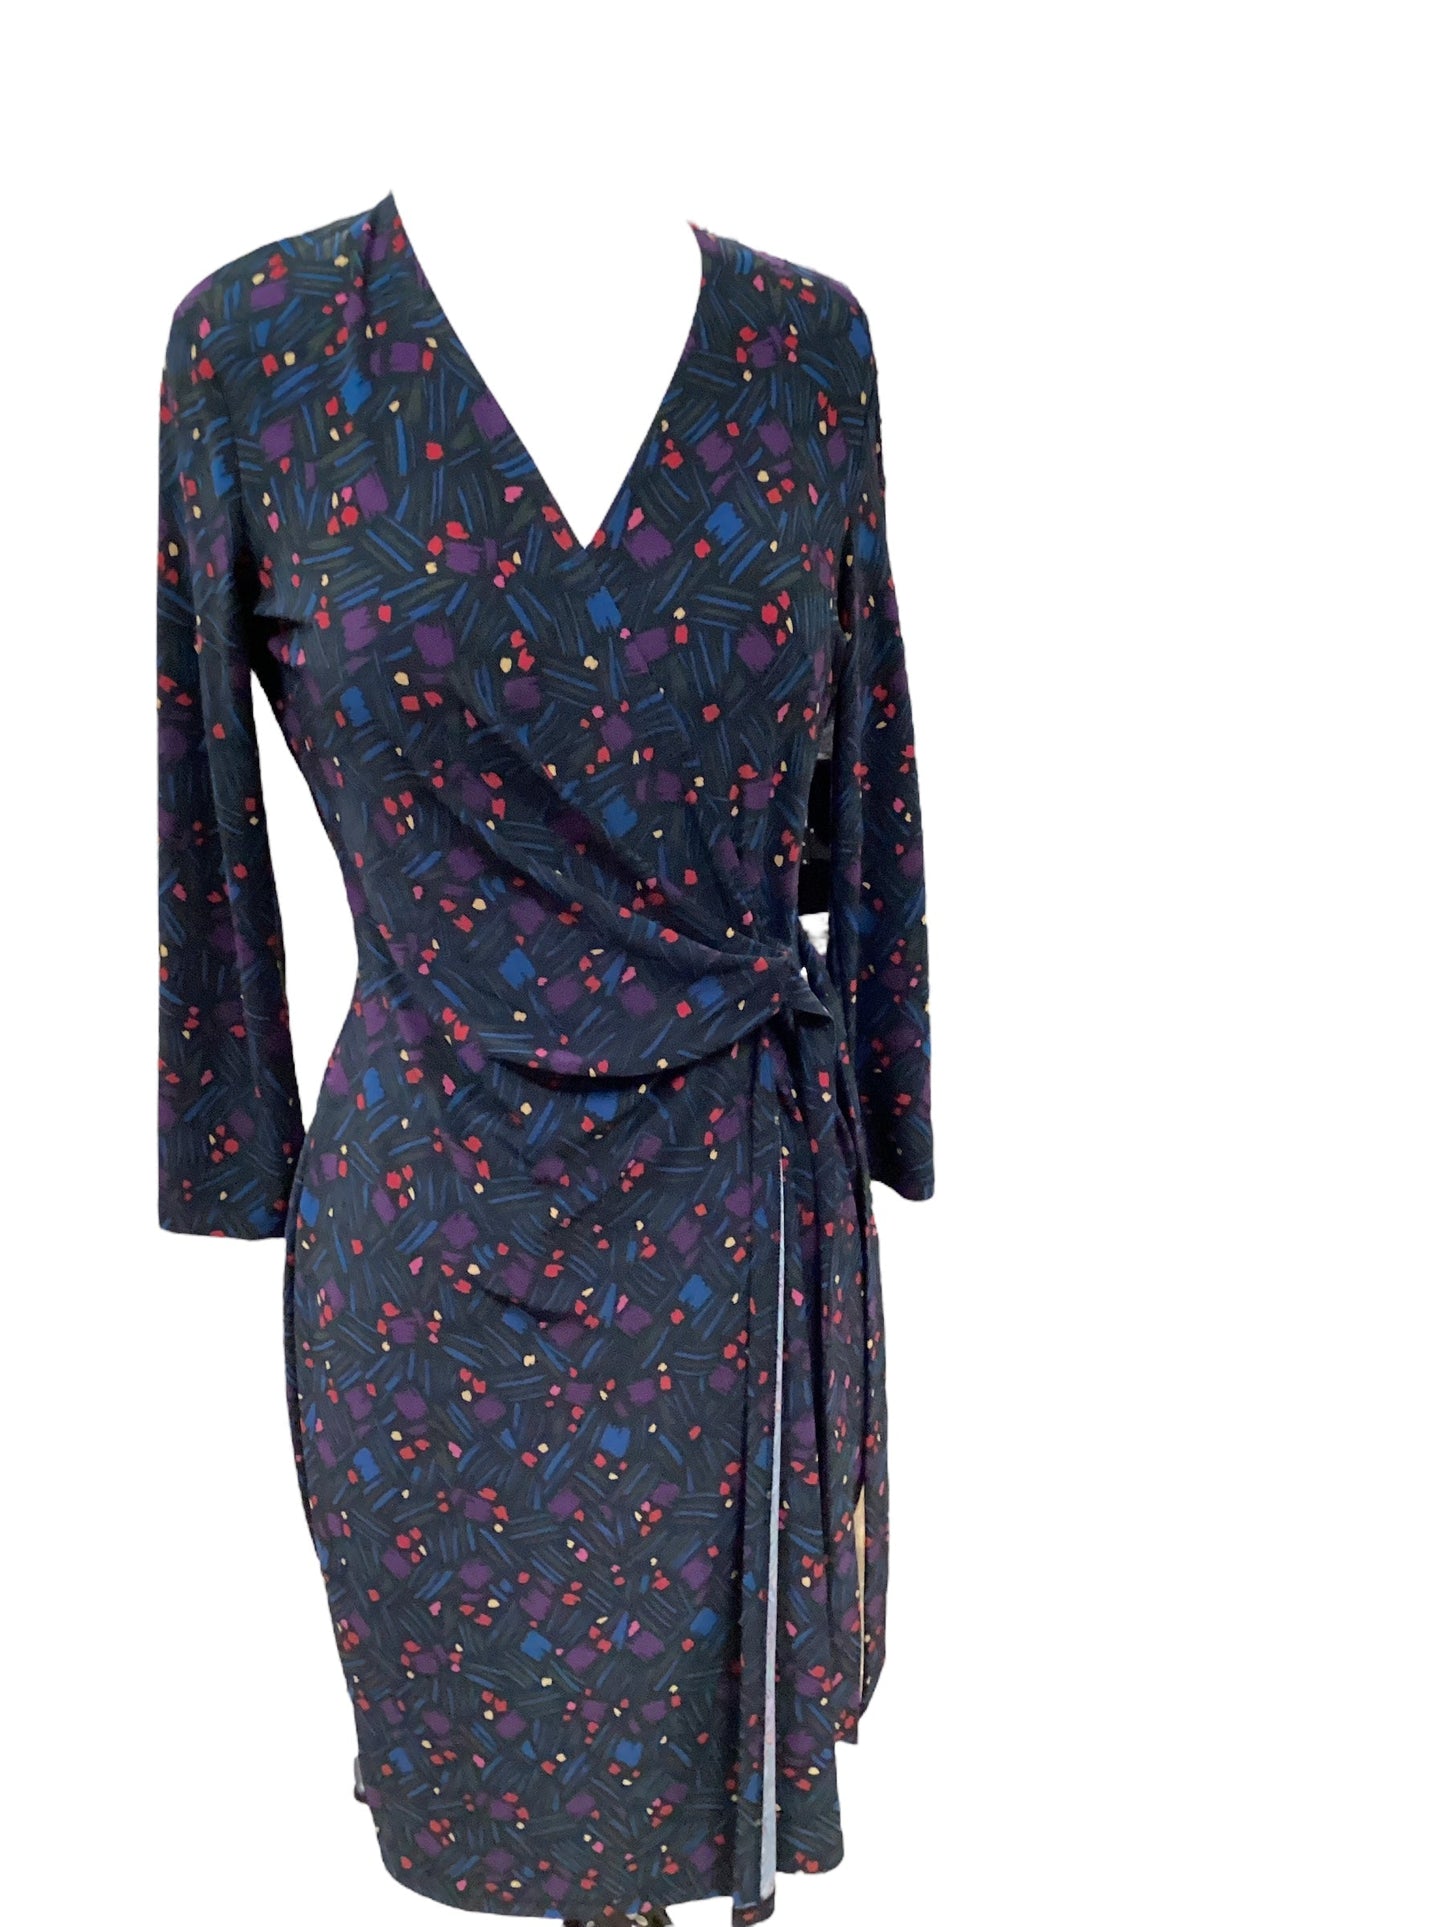 Multi-colored Dress Casual Midi Ann Taylor, Size 4